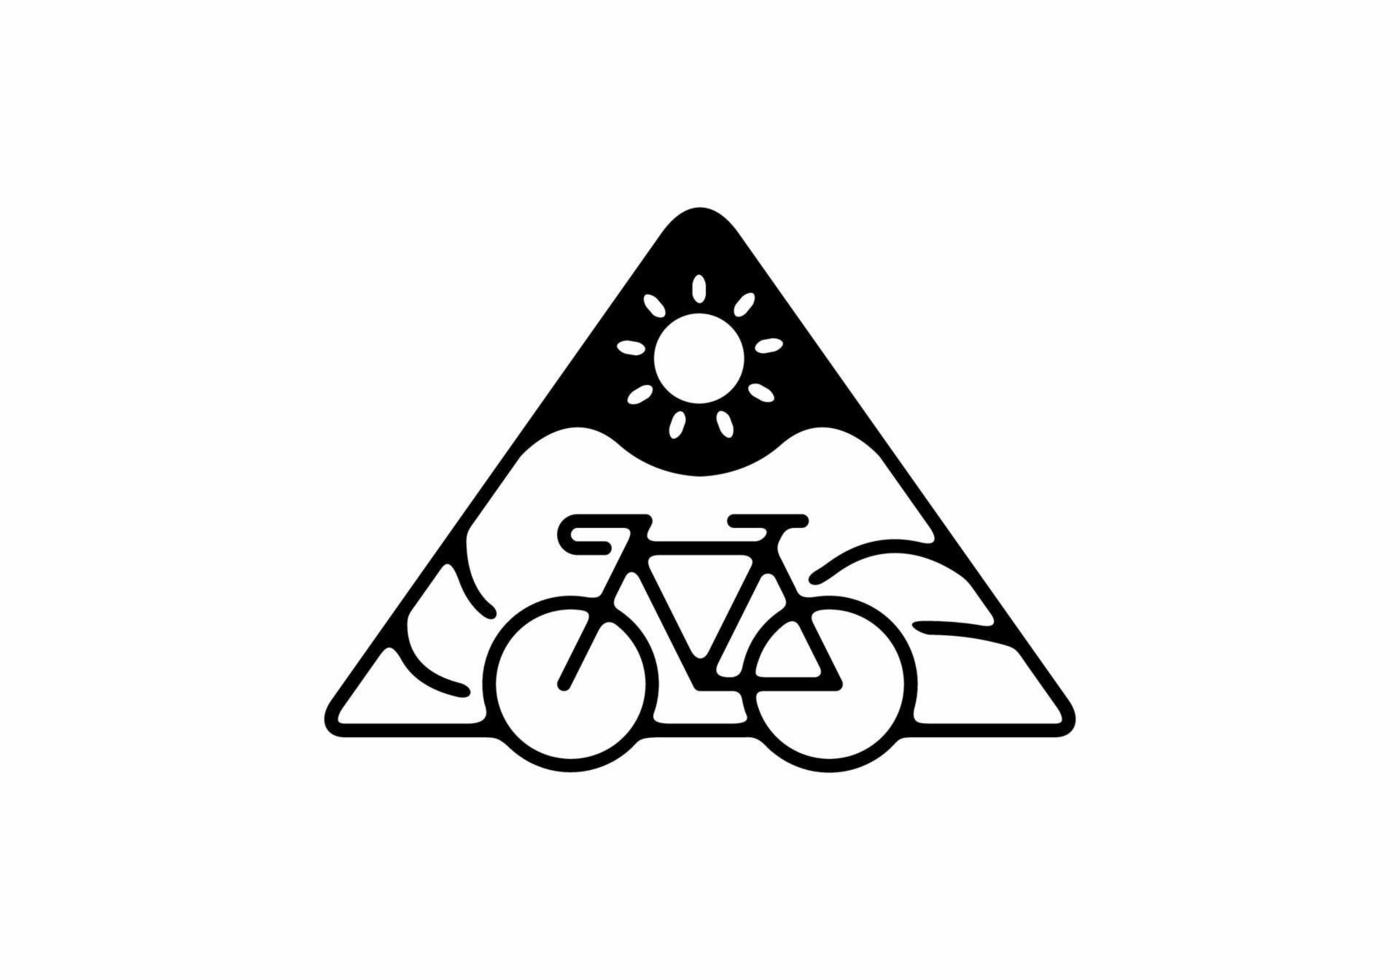 schwarze Linie Kunstillustration des Fahrrads in Dreiecksform vektor